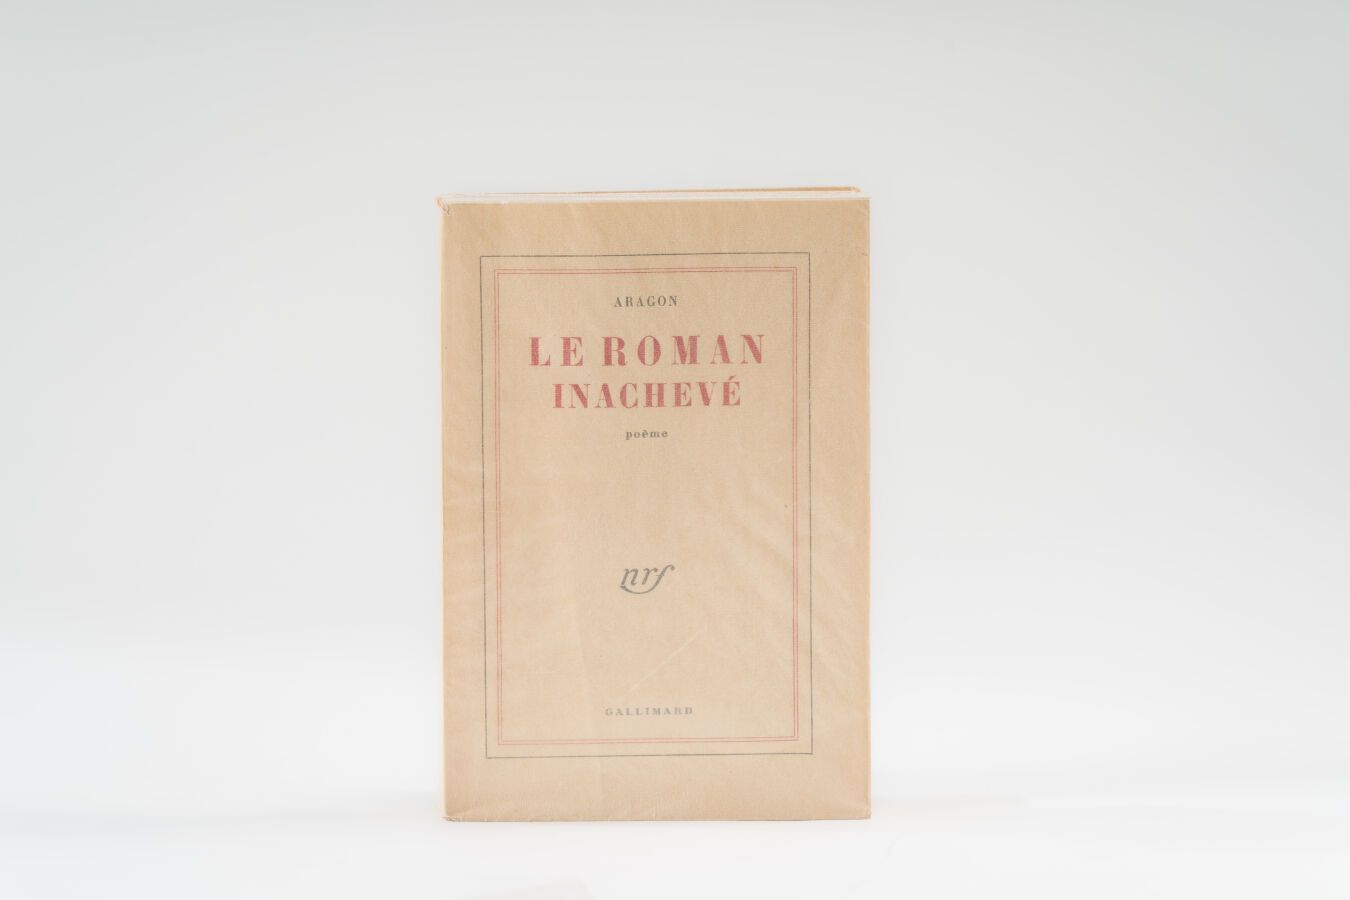 Null 26. ARAGÓN (Luis). 
Le Roman inachevé. París, Gallimard, 1956, in-8, rústic&hellip;